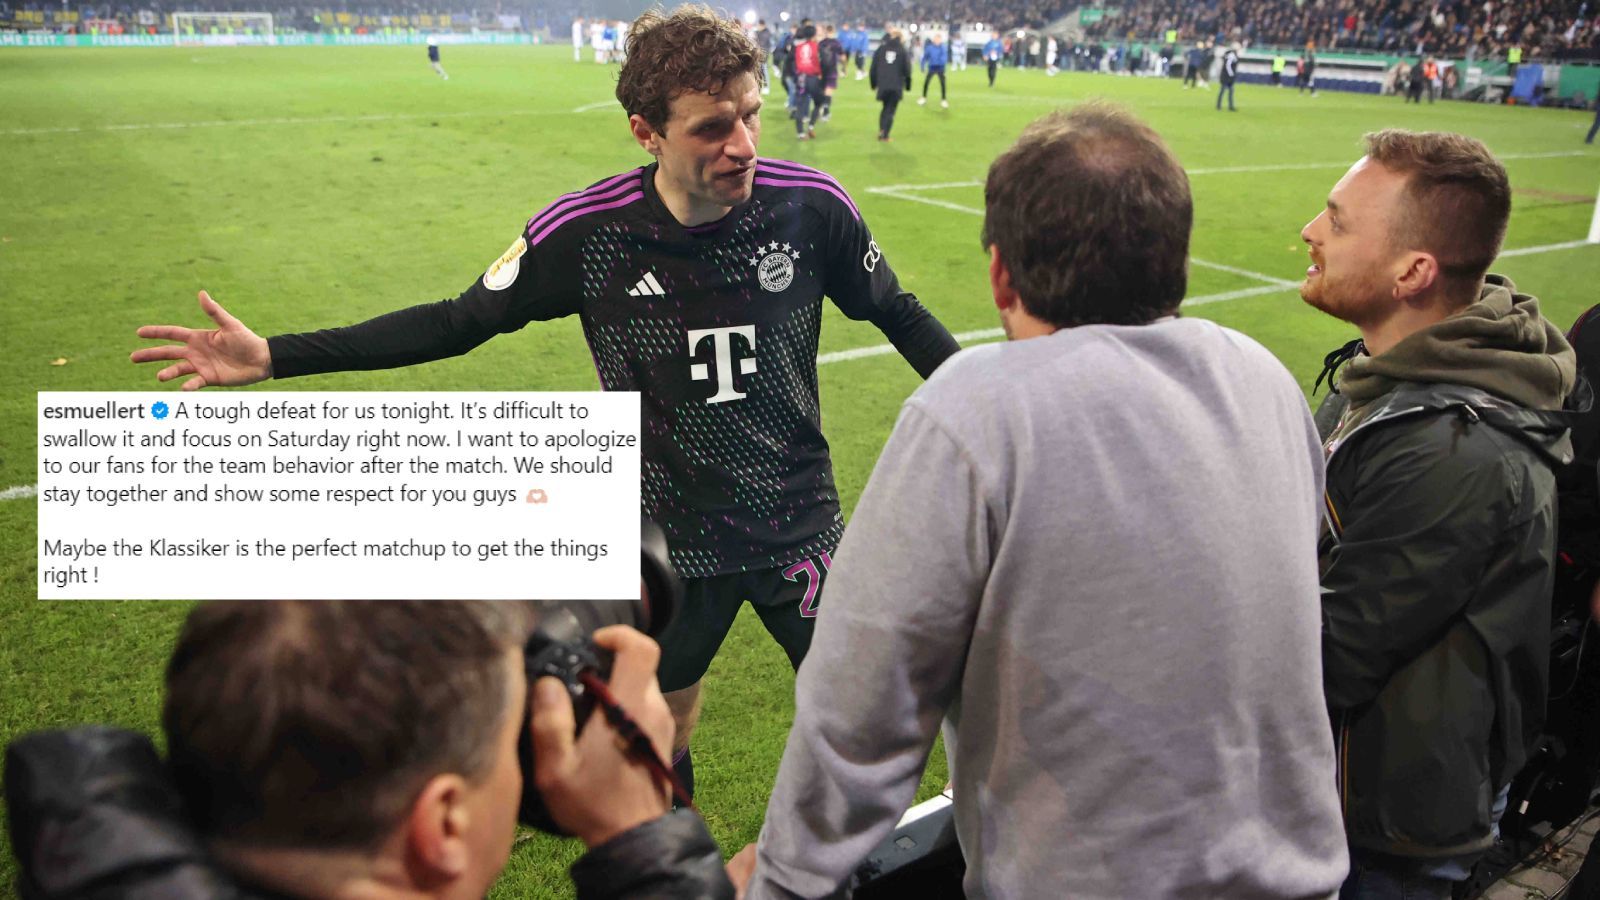 <strong>Müller entschuldigt sich bei den Fans</strong><br>Nach der 1:2-Blamage im Pokal in Saarbrücken bat Thomas Müller via Instagram bei den Fans um Entschuldigung. "Ich möchte mich bei allen Fans für das Verhalten der Mannschaft nach dem Spiel entschuldigen. Wir müssen zusammen stehen und euch mehr Respekt entgegenbringen." Der Großteil der Mannschaft verschwand nach dem Spiel in der Kabine, ohne zu den Fans zu gehen.